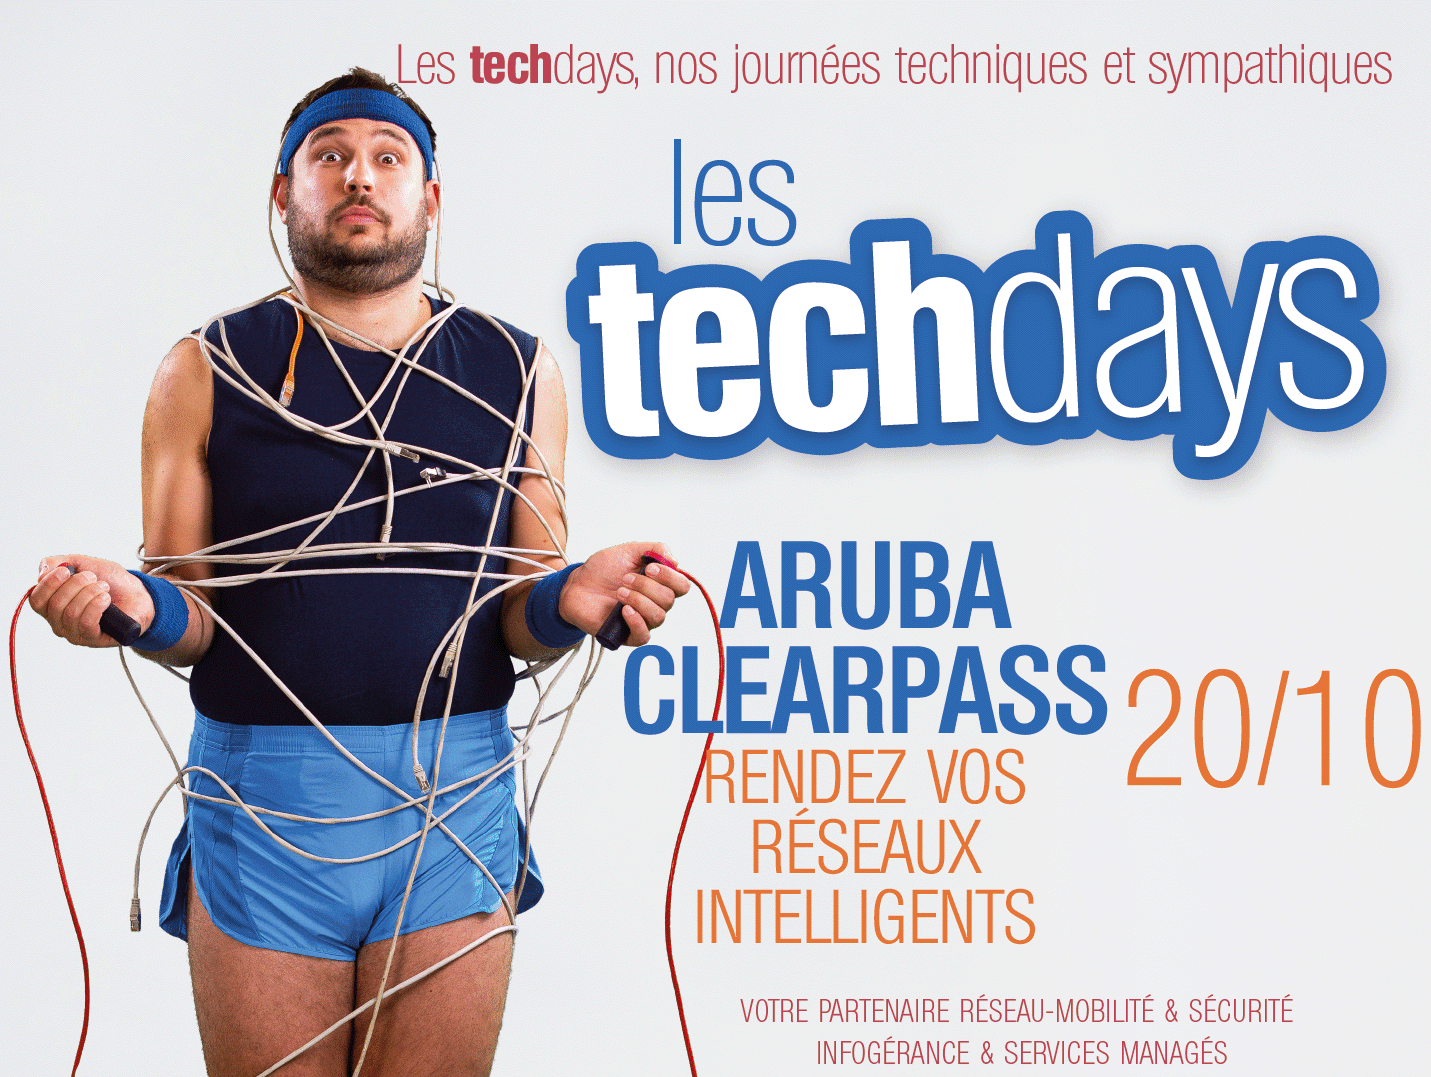 TechDays Aruba Clearpass !